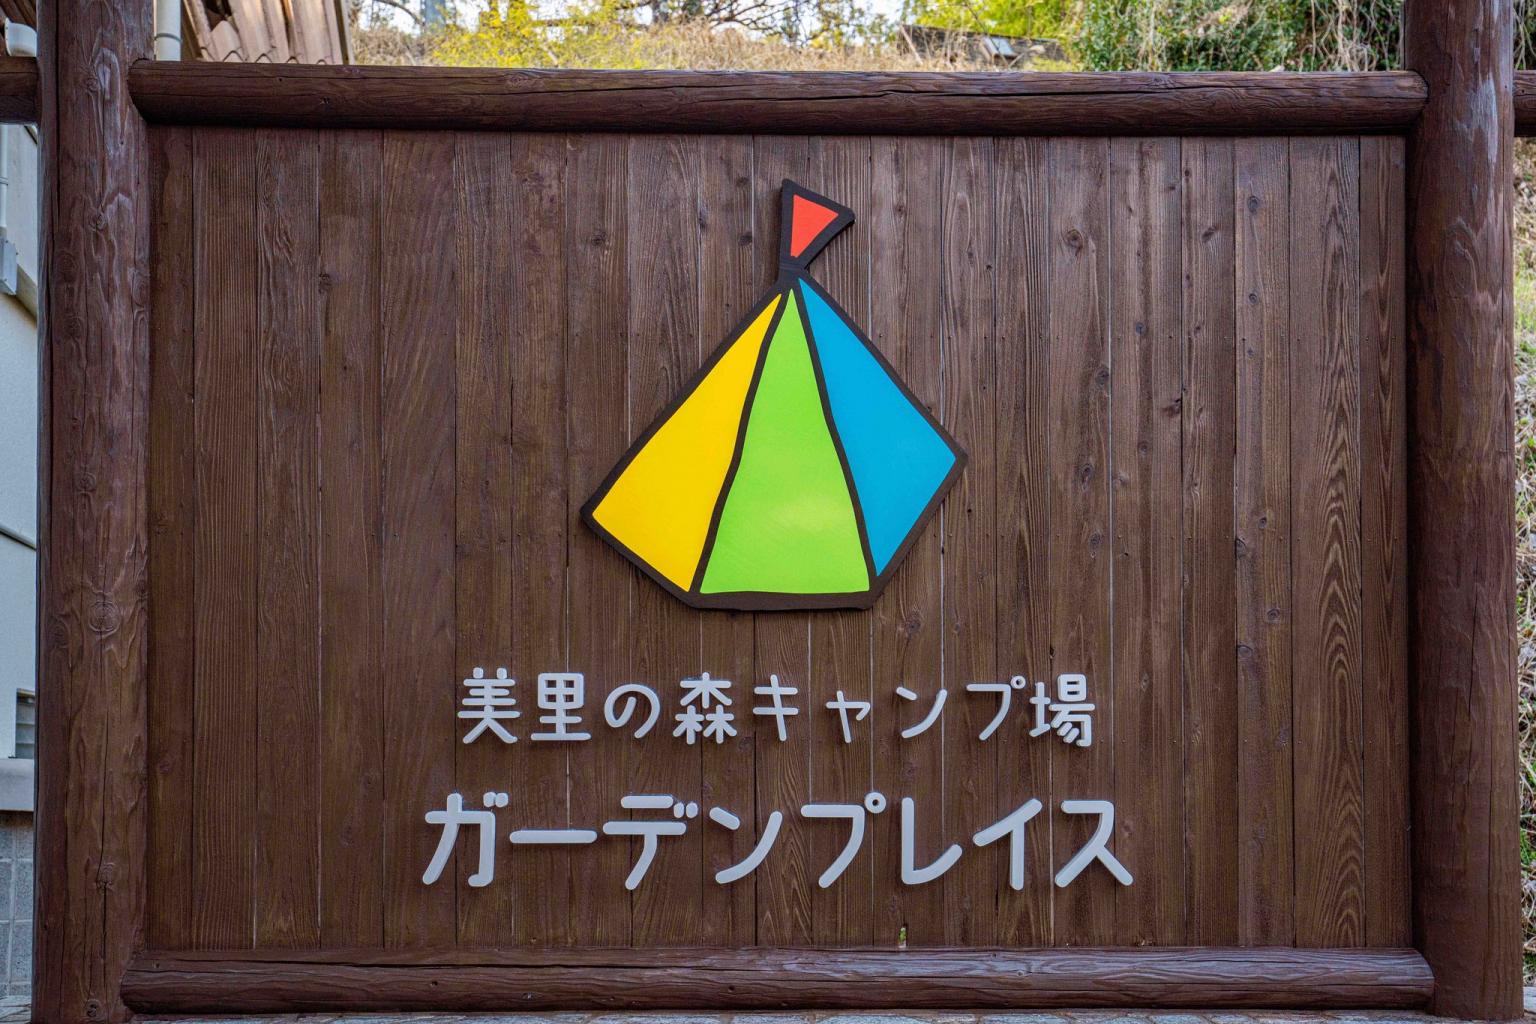 美里の森キャンプ場ガーデンプレイス1 美里町 フォトギャラリー 公式 熊本県観光サイト もっと もーっと くまもっと